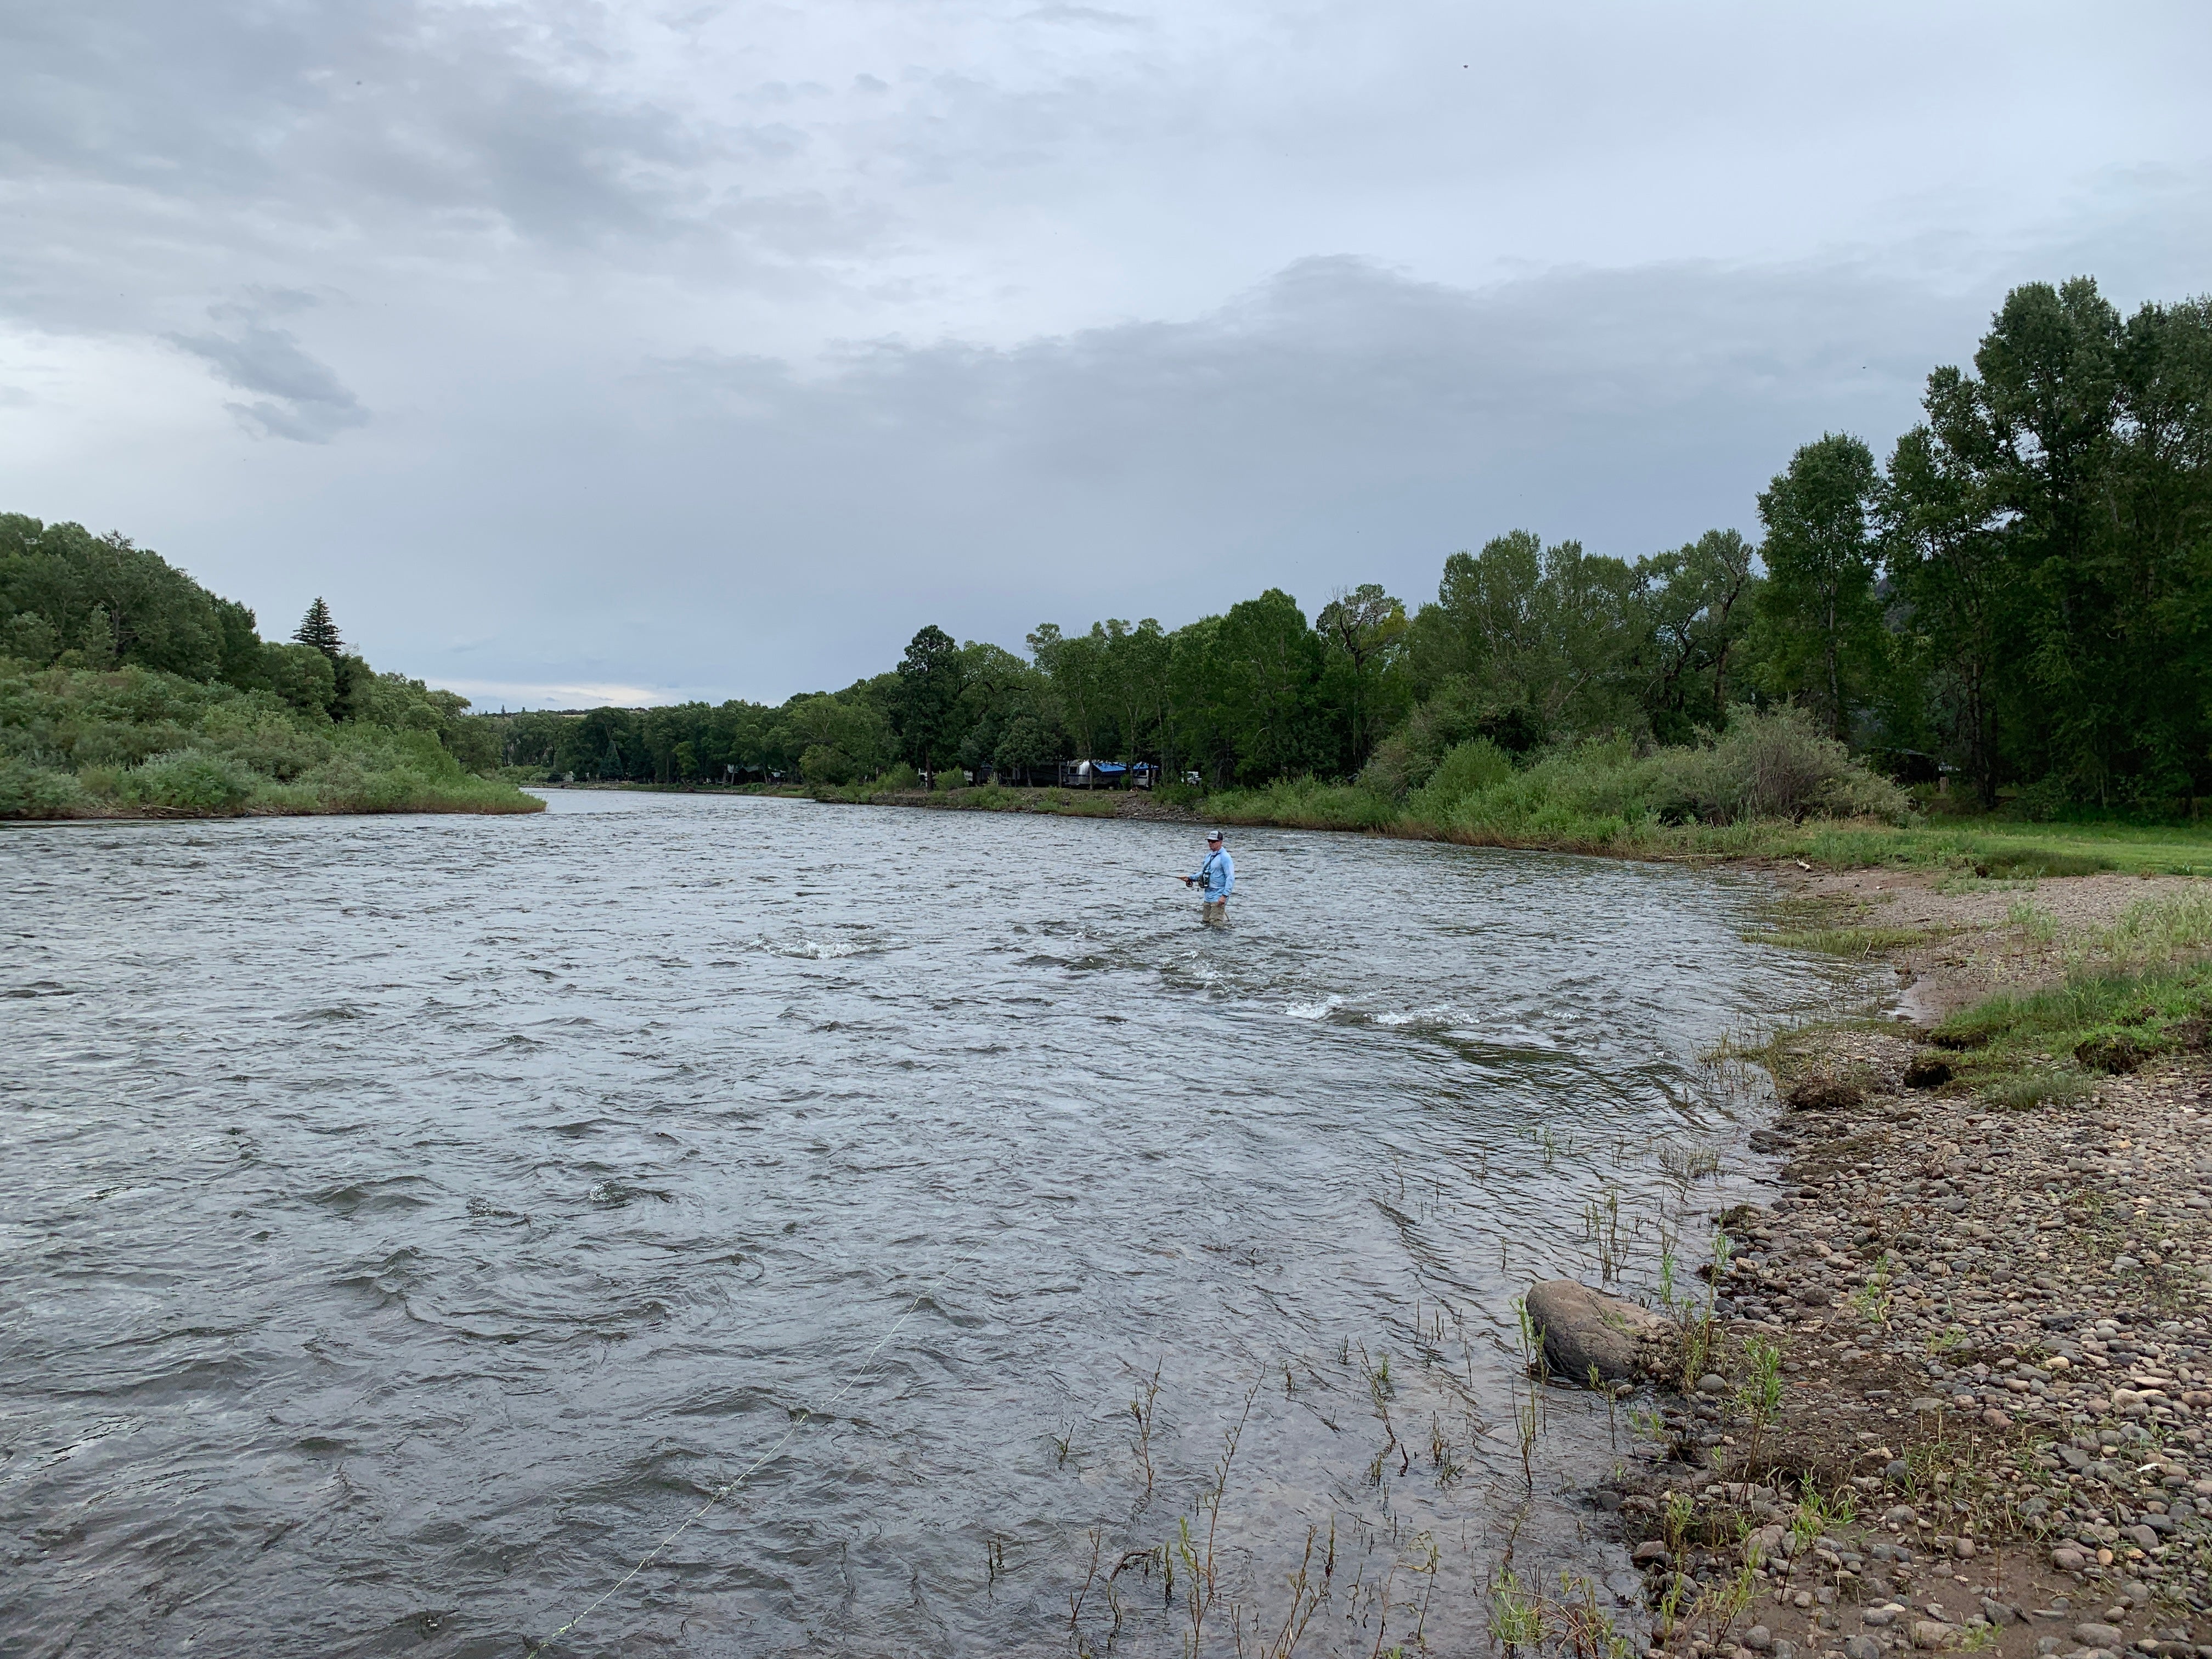 Fishing the Rio Grande River